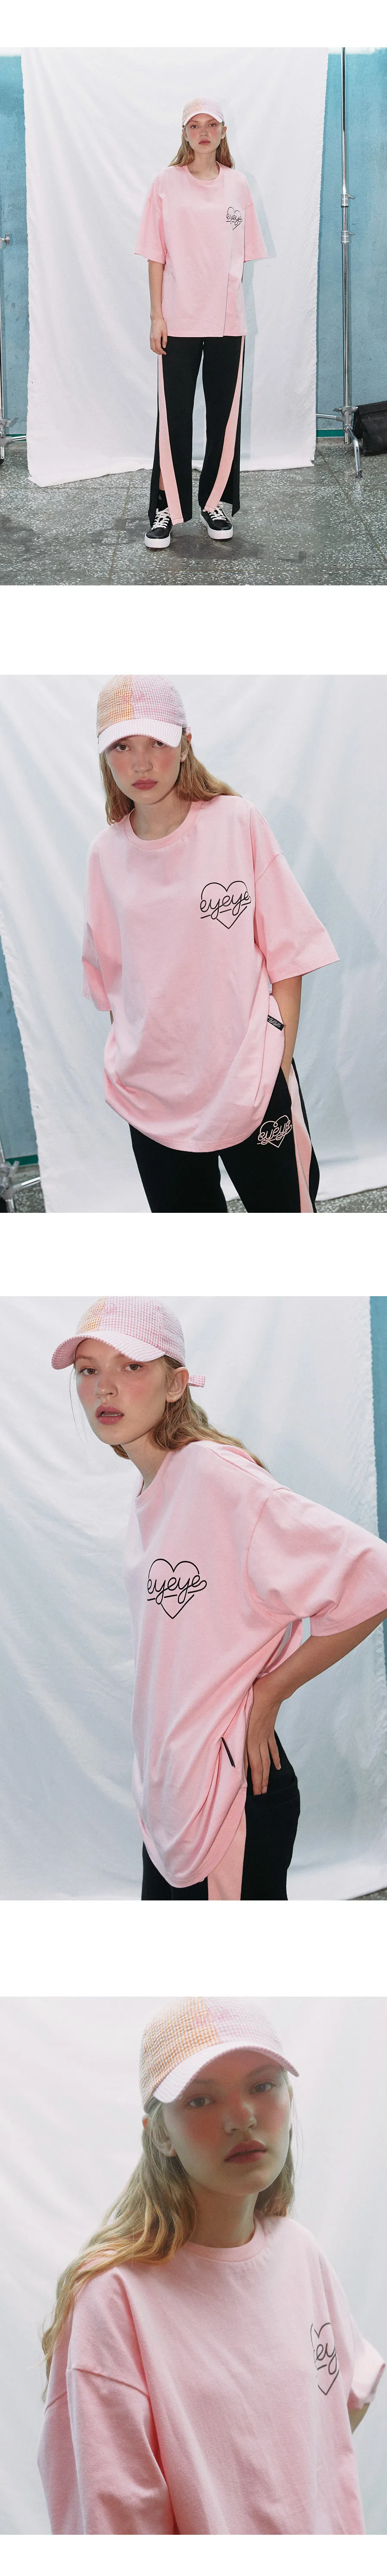 eyeyeハートロゴ半袖Tシャツ(ピンク) | 詳細画像3